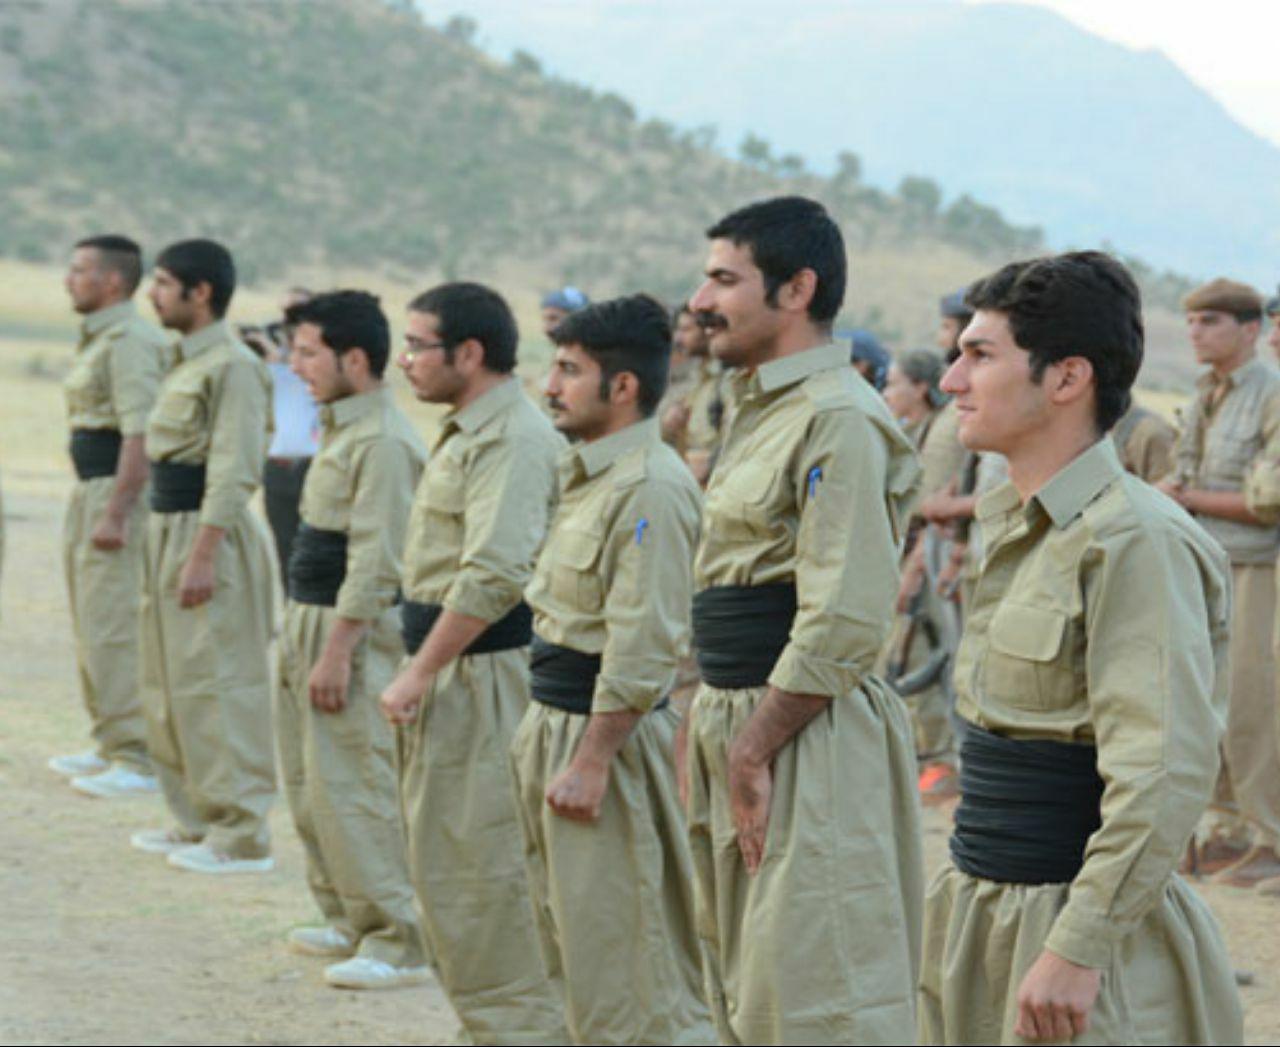 پایان دوره آموزشی اعضای جدید حزب منحله دمکرات کردستان